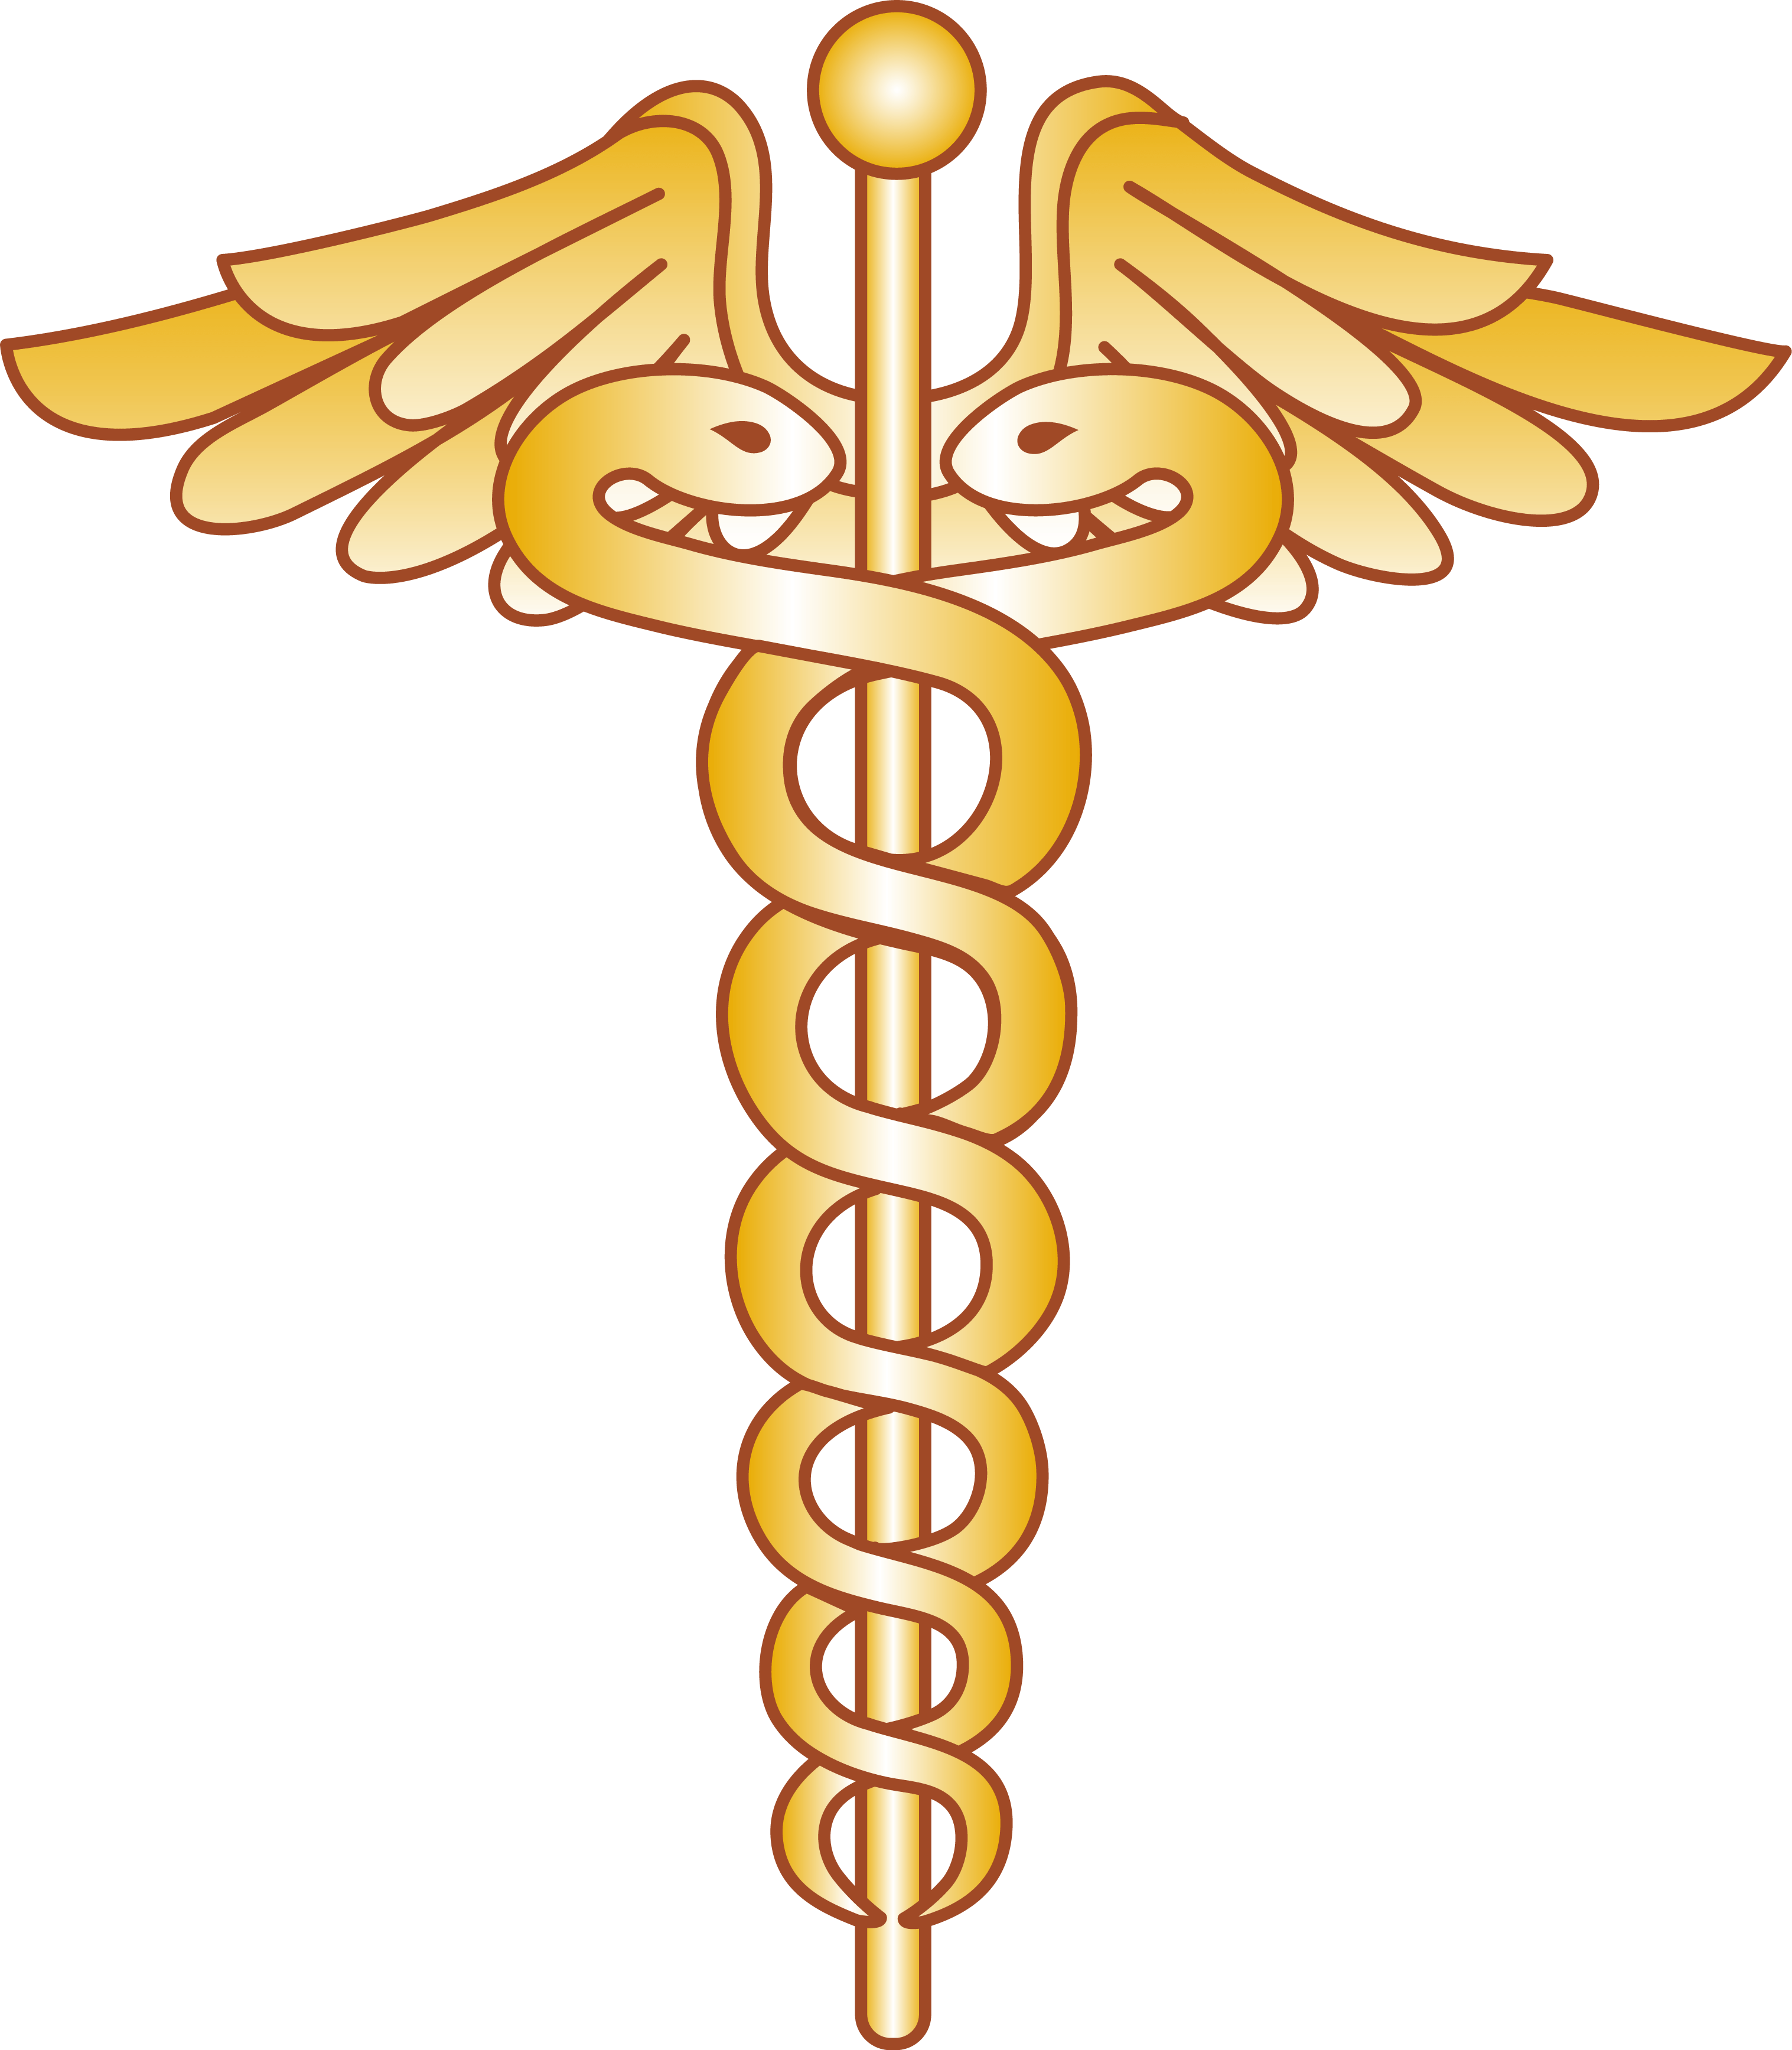 Medical Cross Snake Logo - Free Snake Health Cliparts, Download Free Clip Art, Free Clip Art on ...